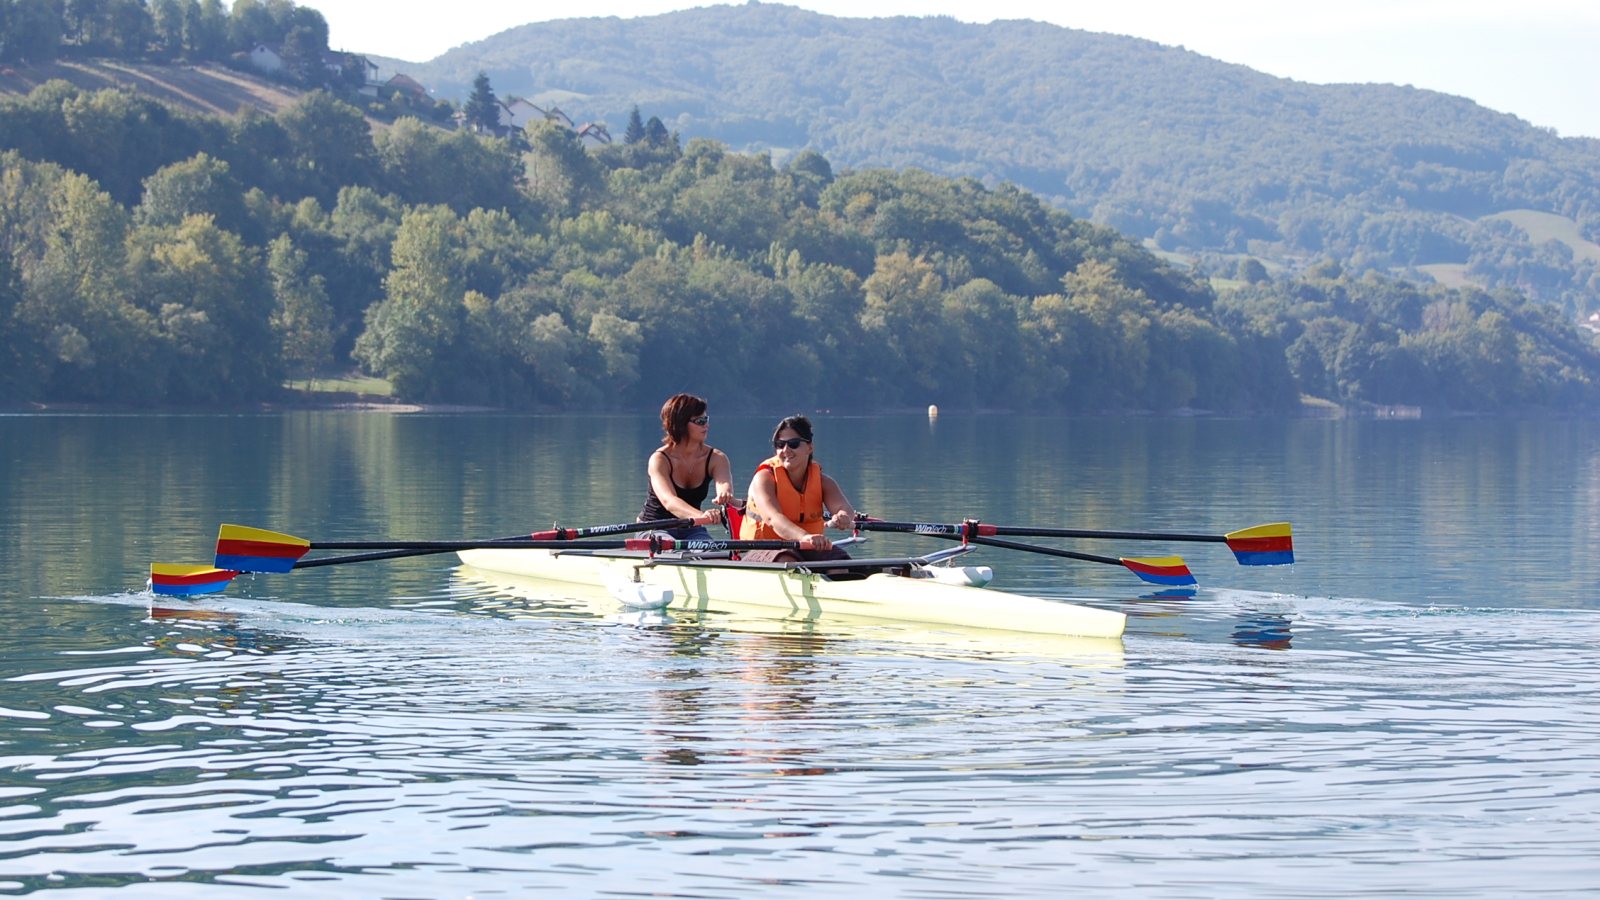 Sous le soleil illuminant le lac et leur passage sur l'eau, deux personnes rament à bord de leur aviron adapté.